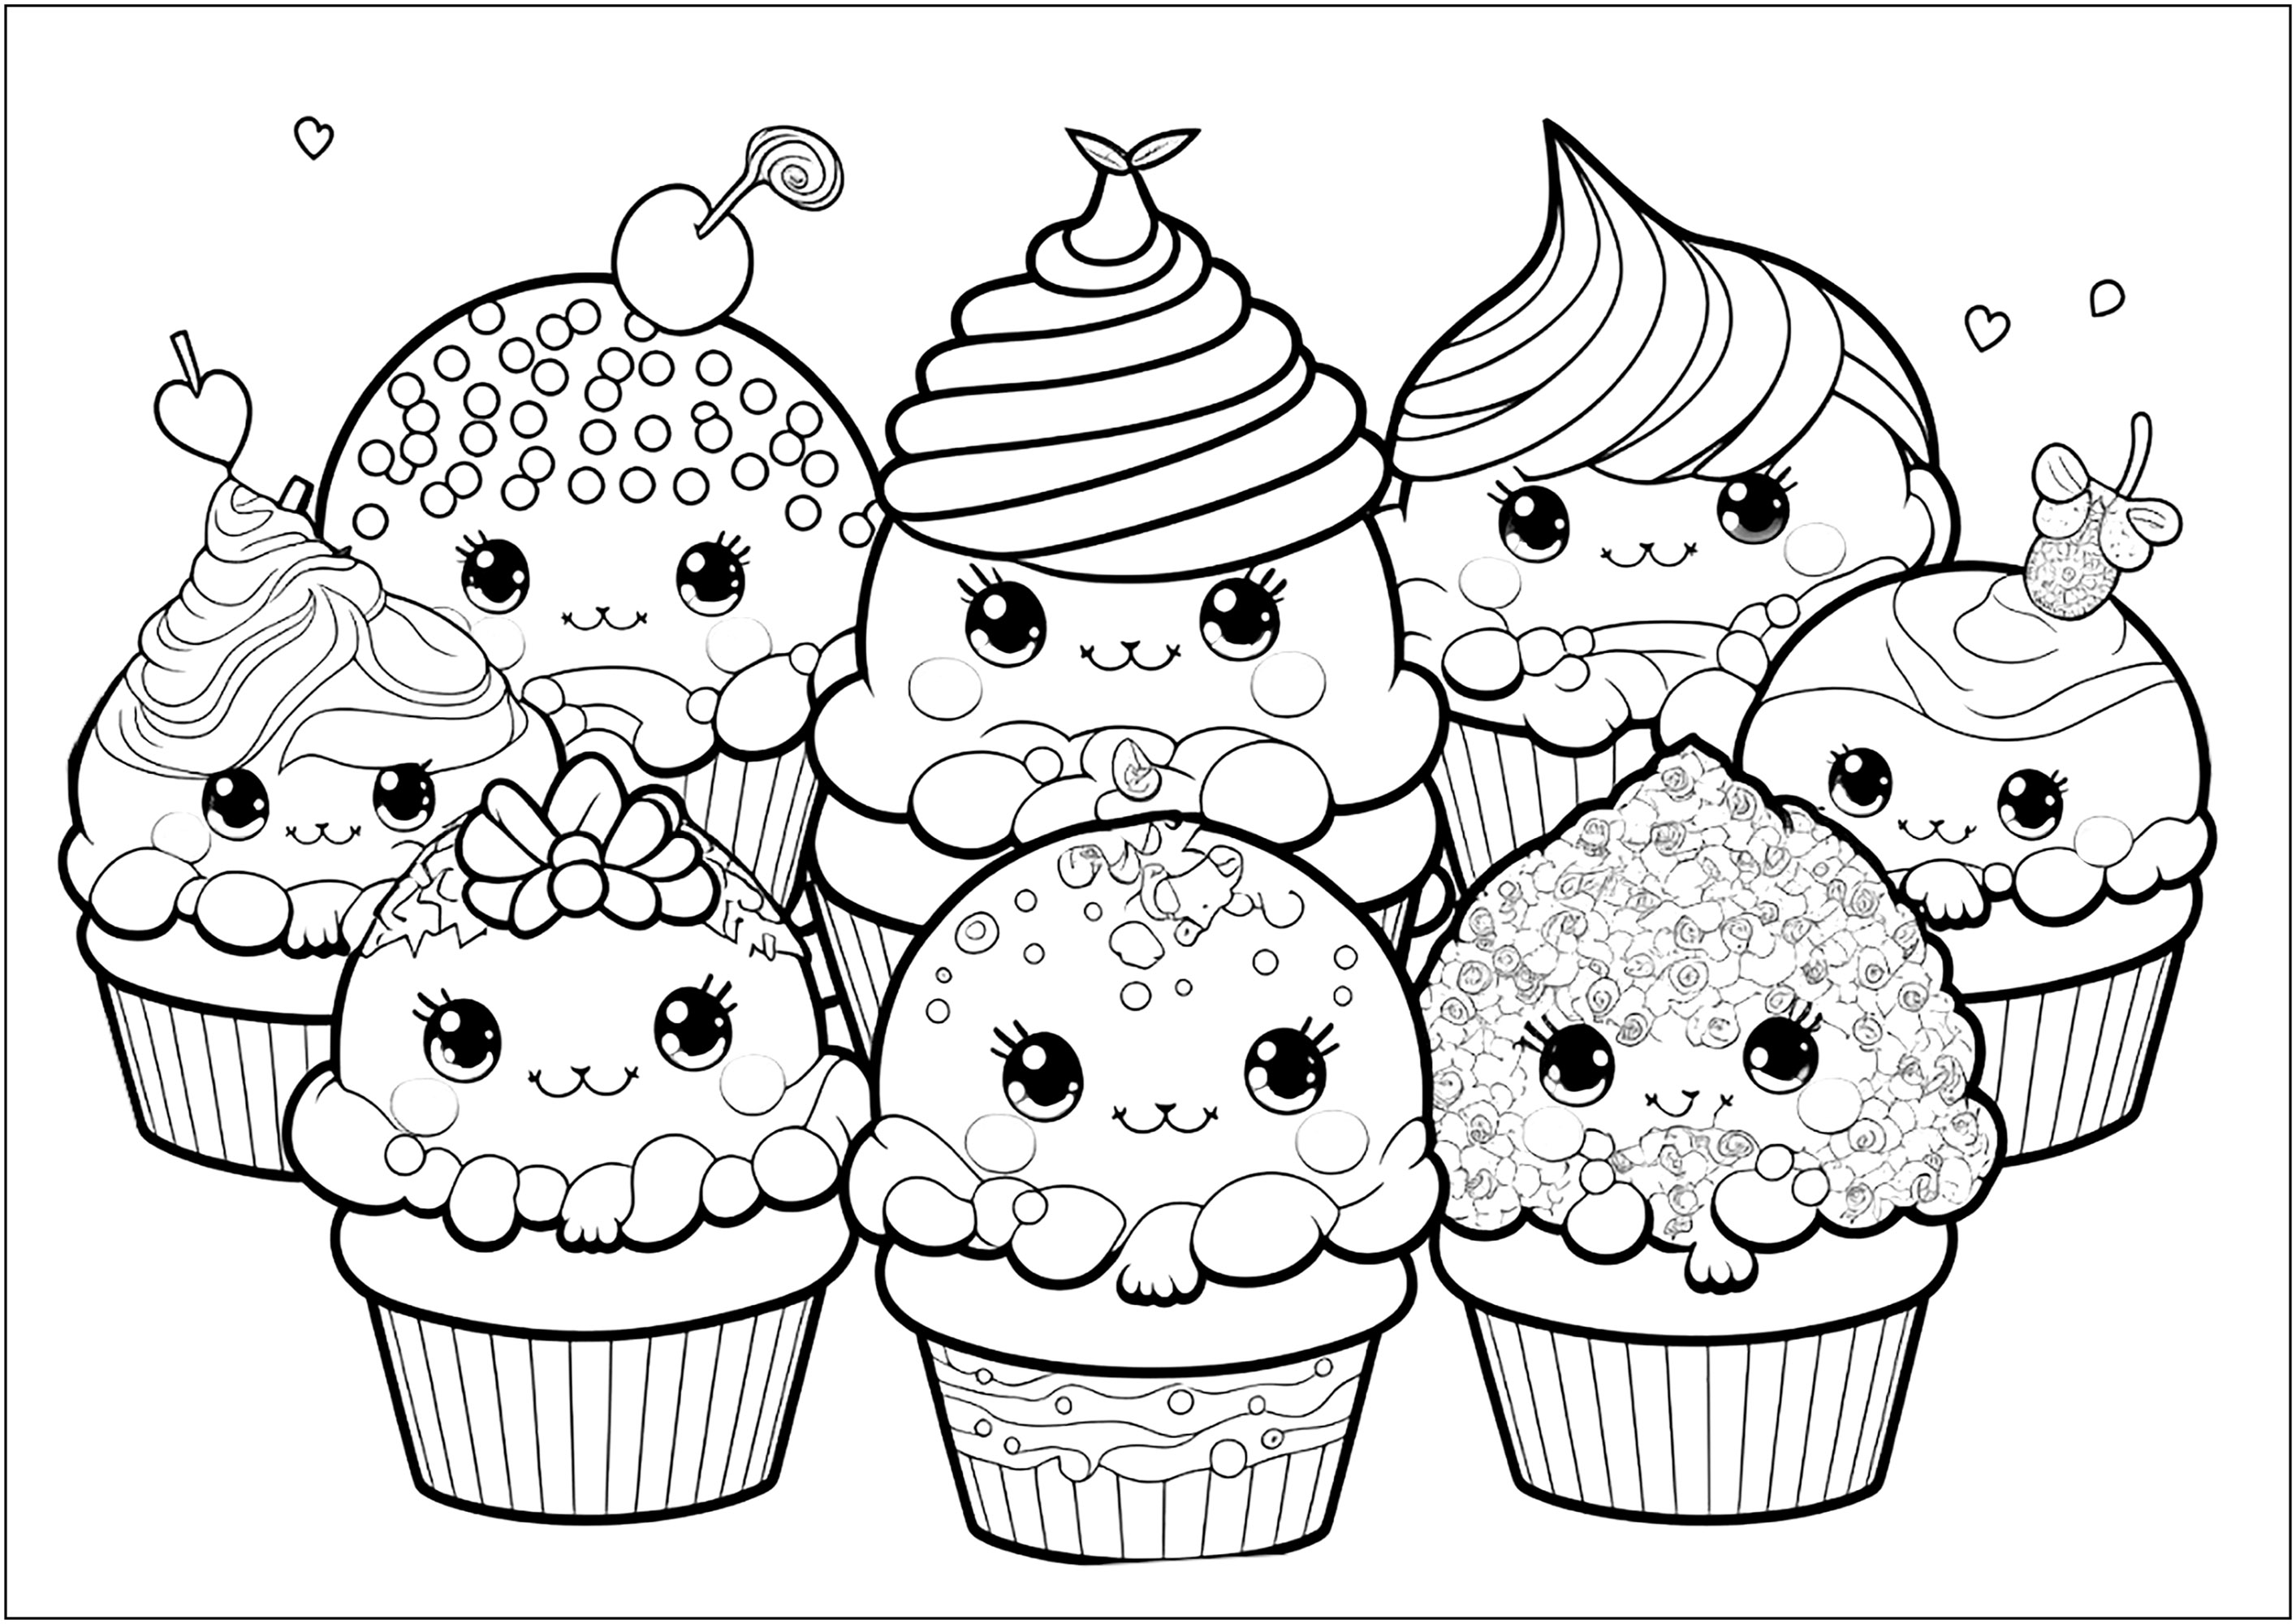 Drôles de cupcakes mignons, avec des visages souriants, inspirés des personnages Kawaii